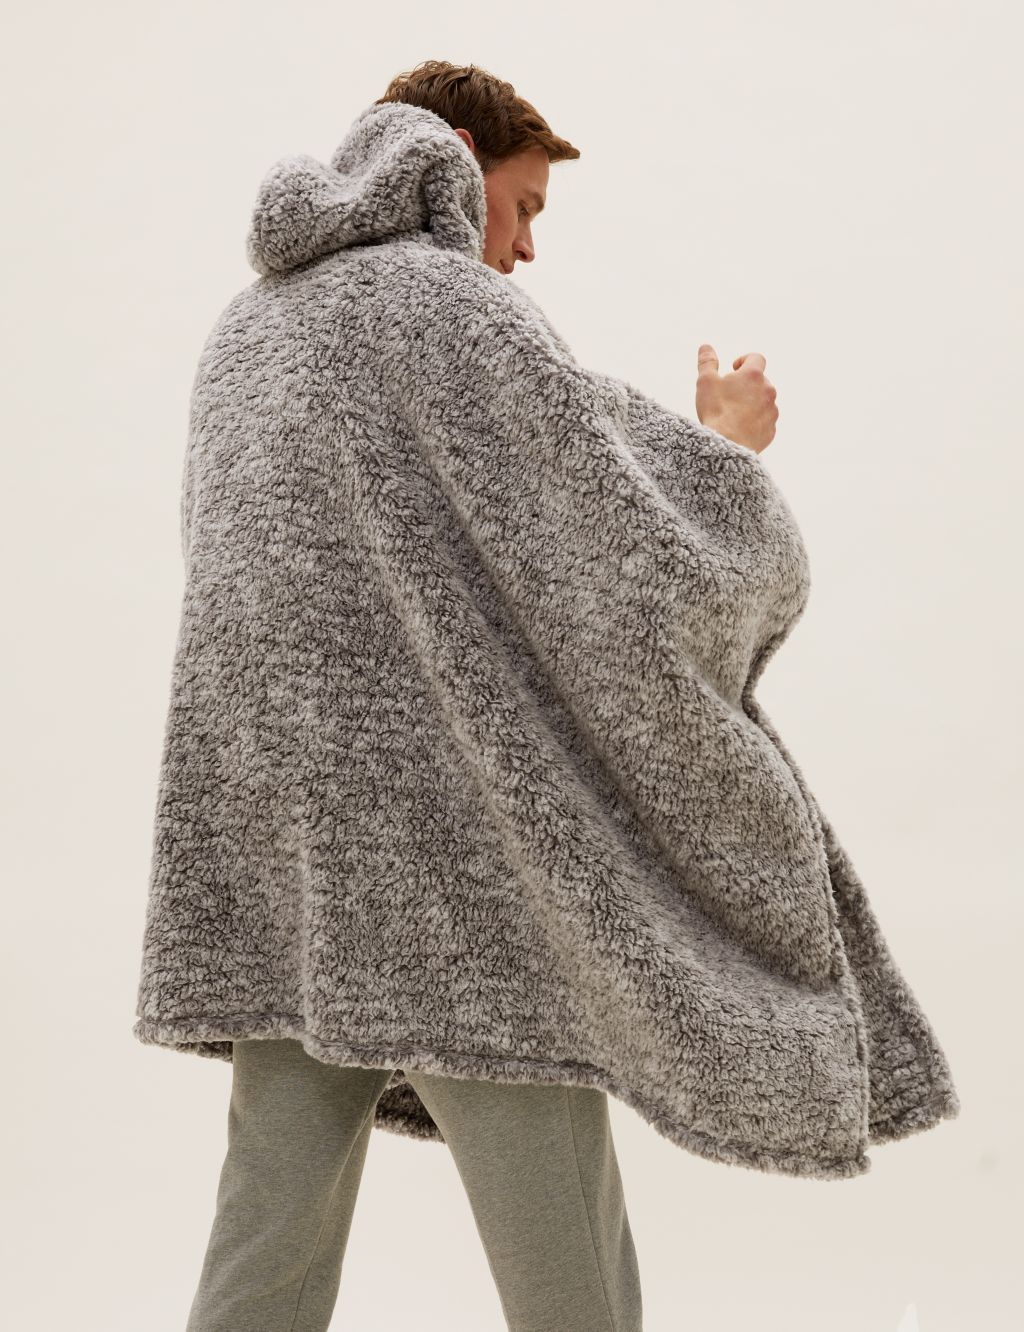 Teddy Fleece Adults' Hooded Blanket